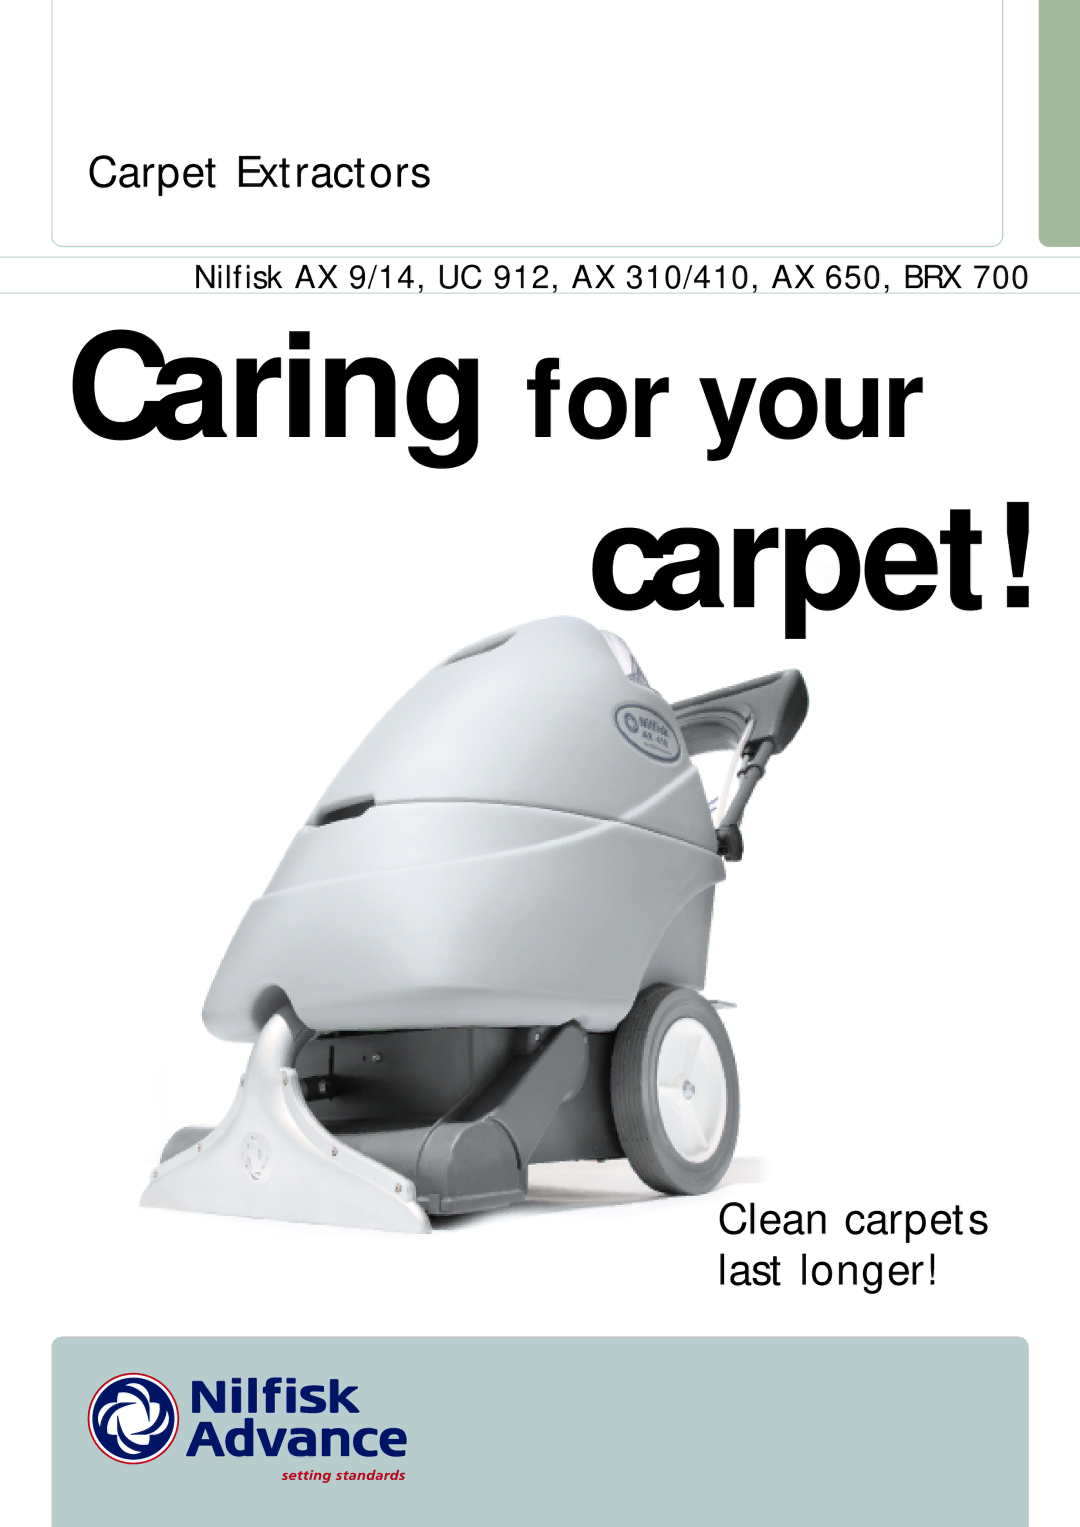 Nilfisk-ALTO AX 410, AX 310 manual Carpet Extractors, Clean carpets last longer 